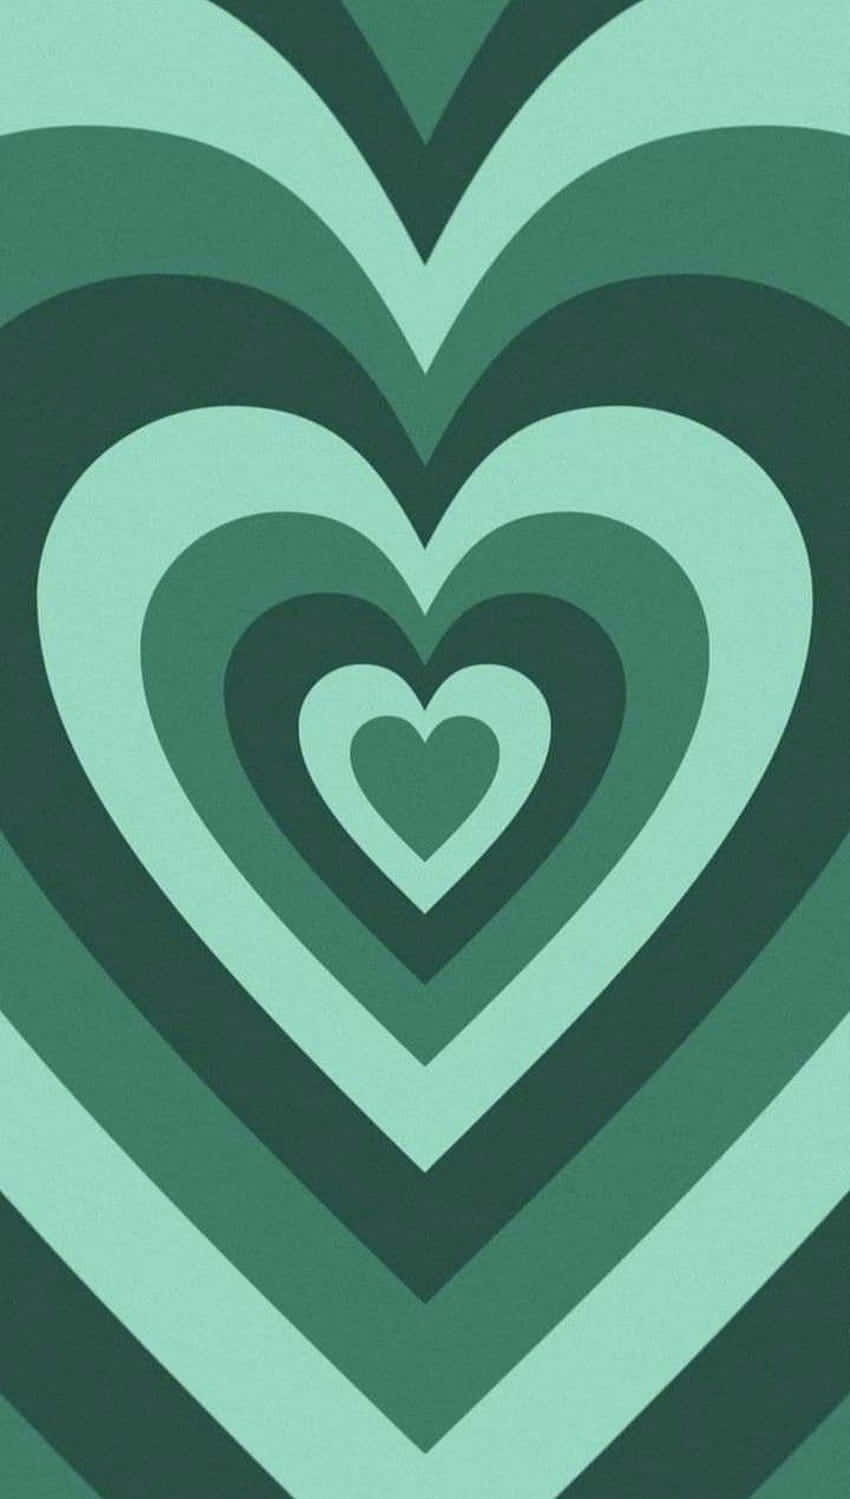 Vis din kærlighed med disse romantiske myntegrønne hjerter. Wallpaper